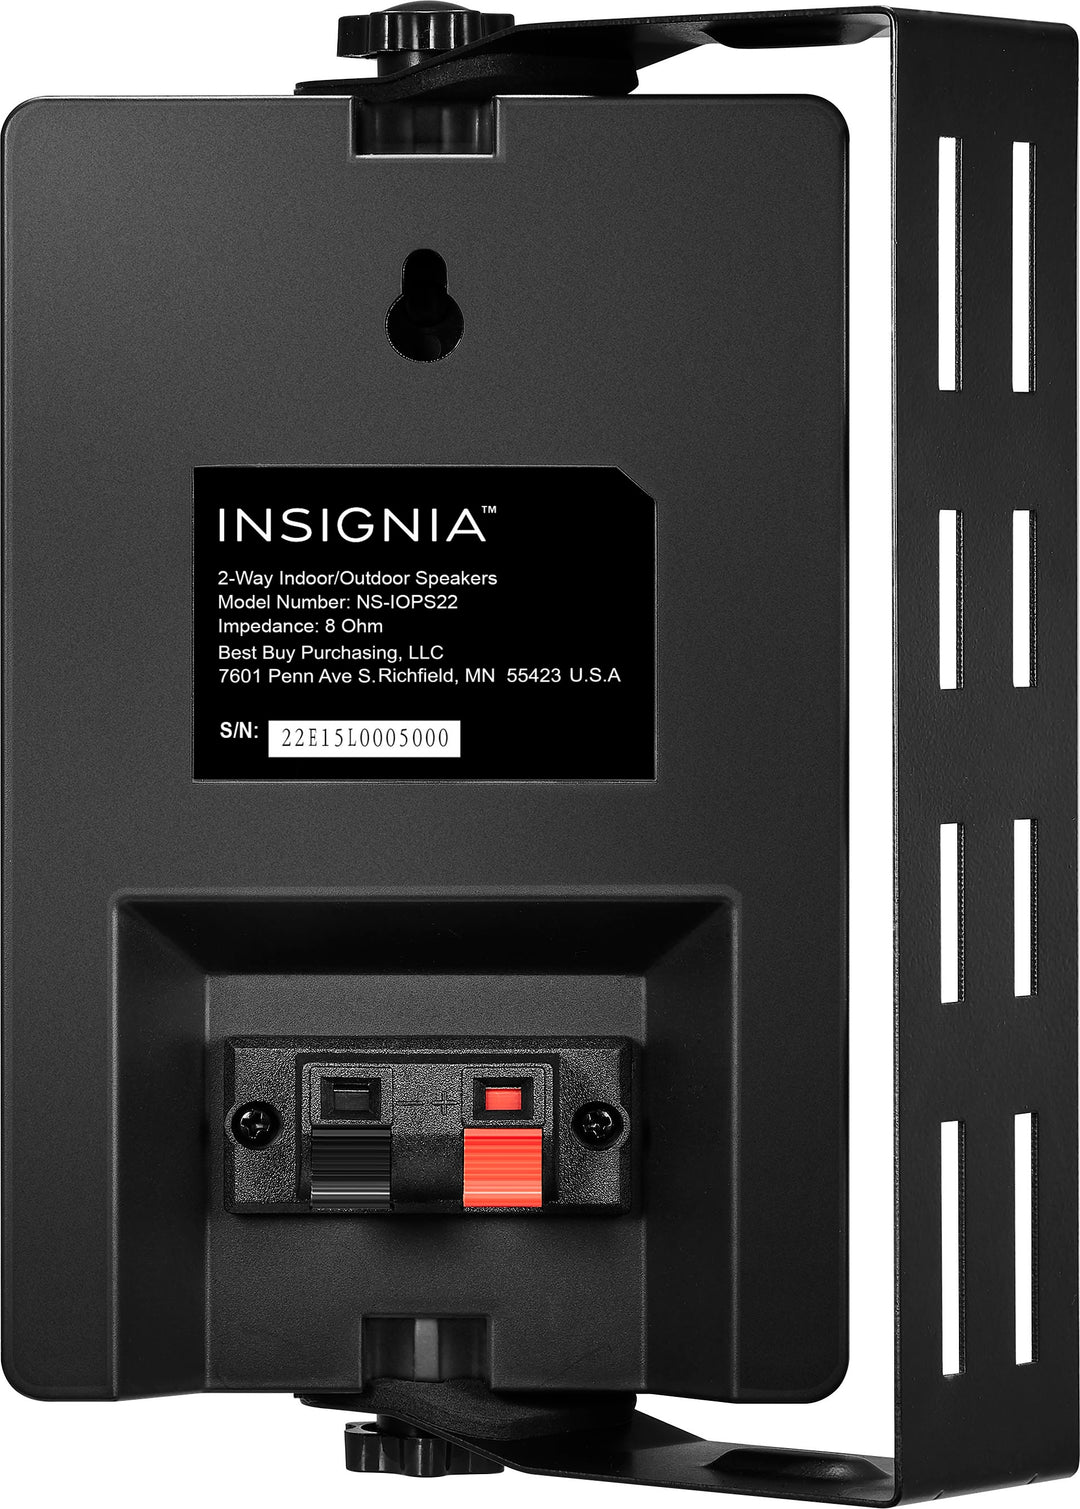 Insignia™ - 2-Way Indoor/Outdoor Speakers (Pair) - Black_3